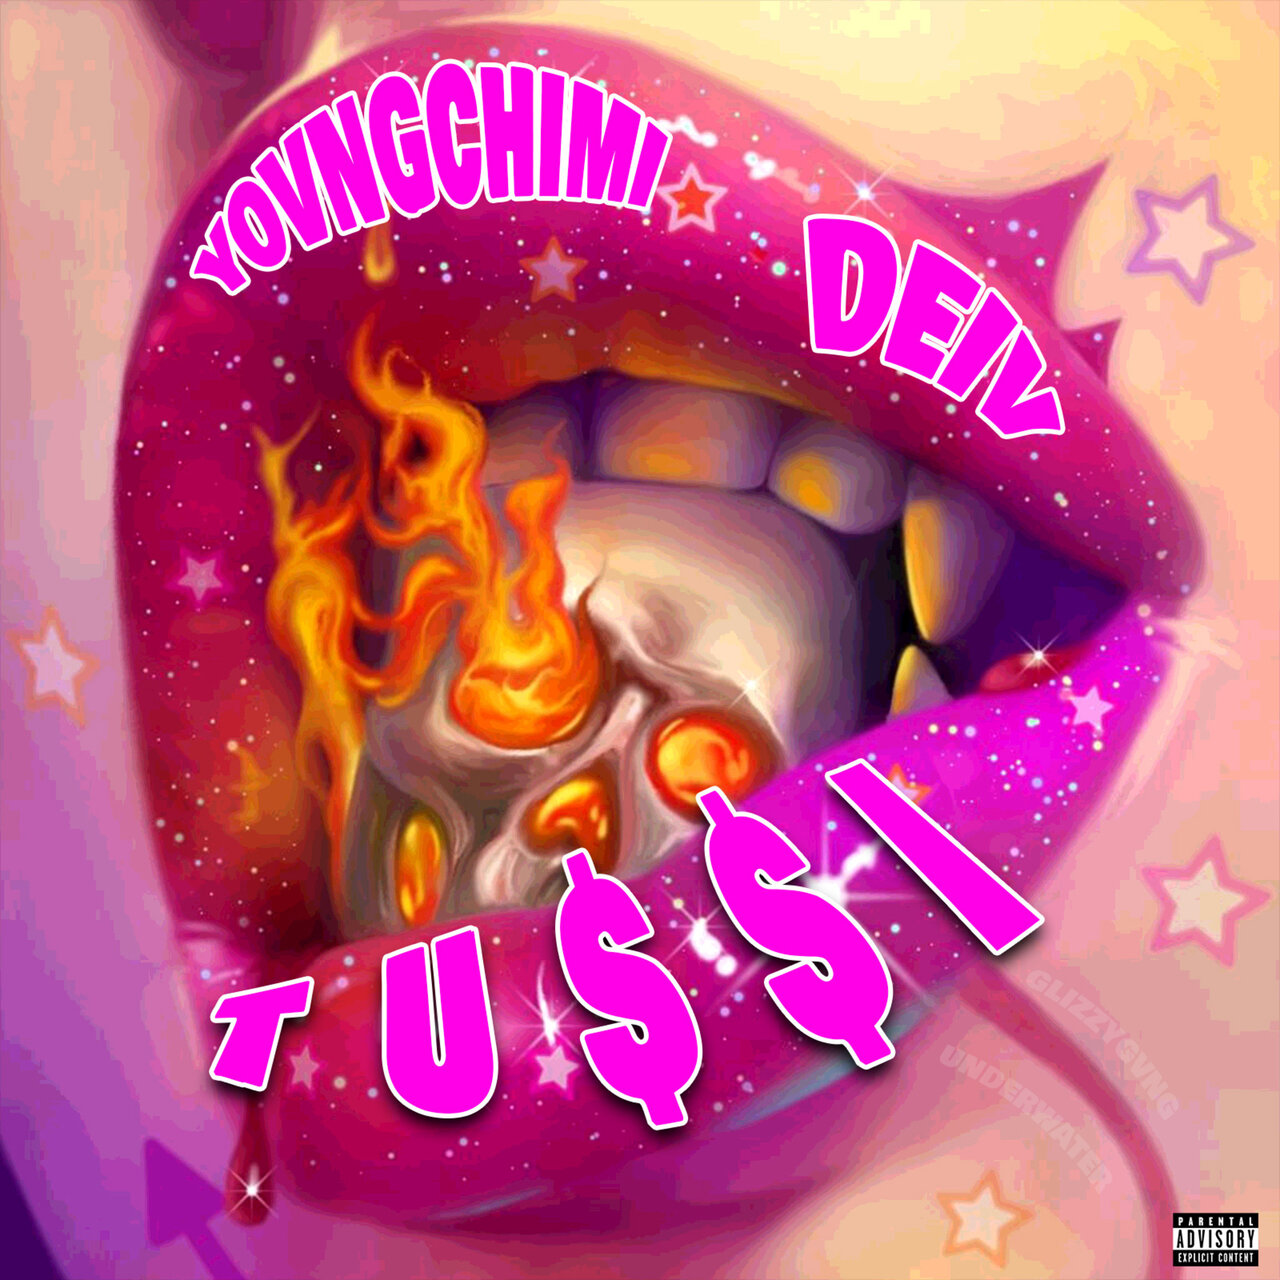 YovngChimi - Tussi (ft. Dei V) (Cover)